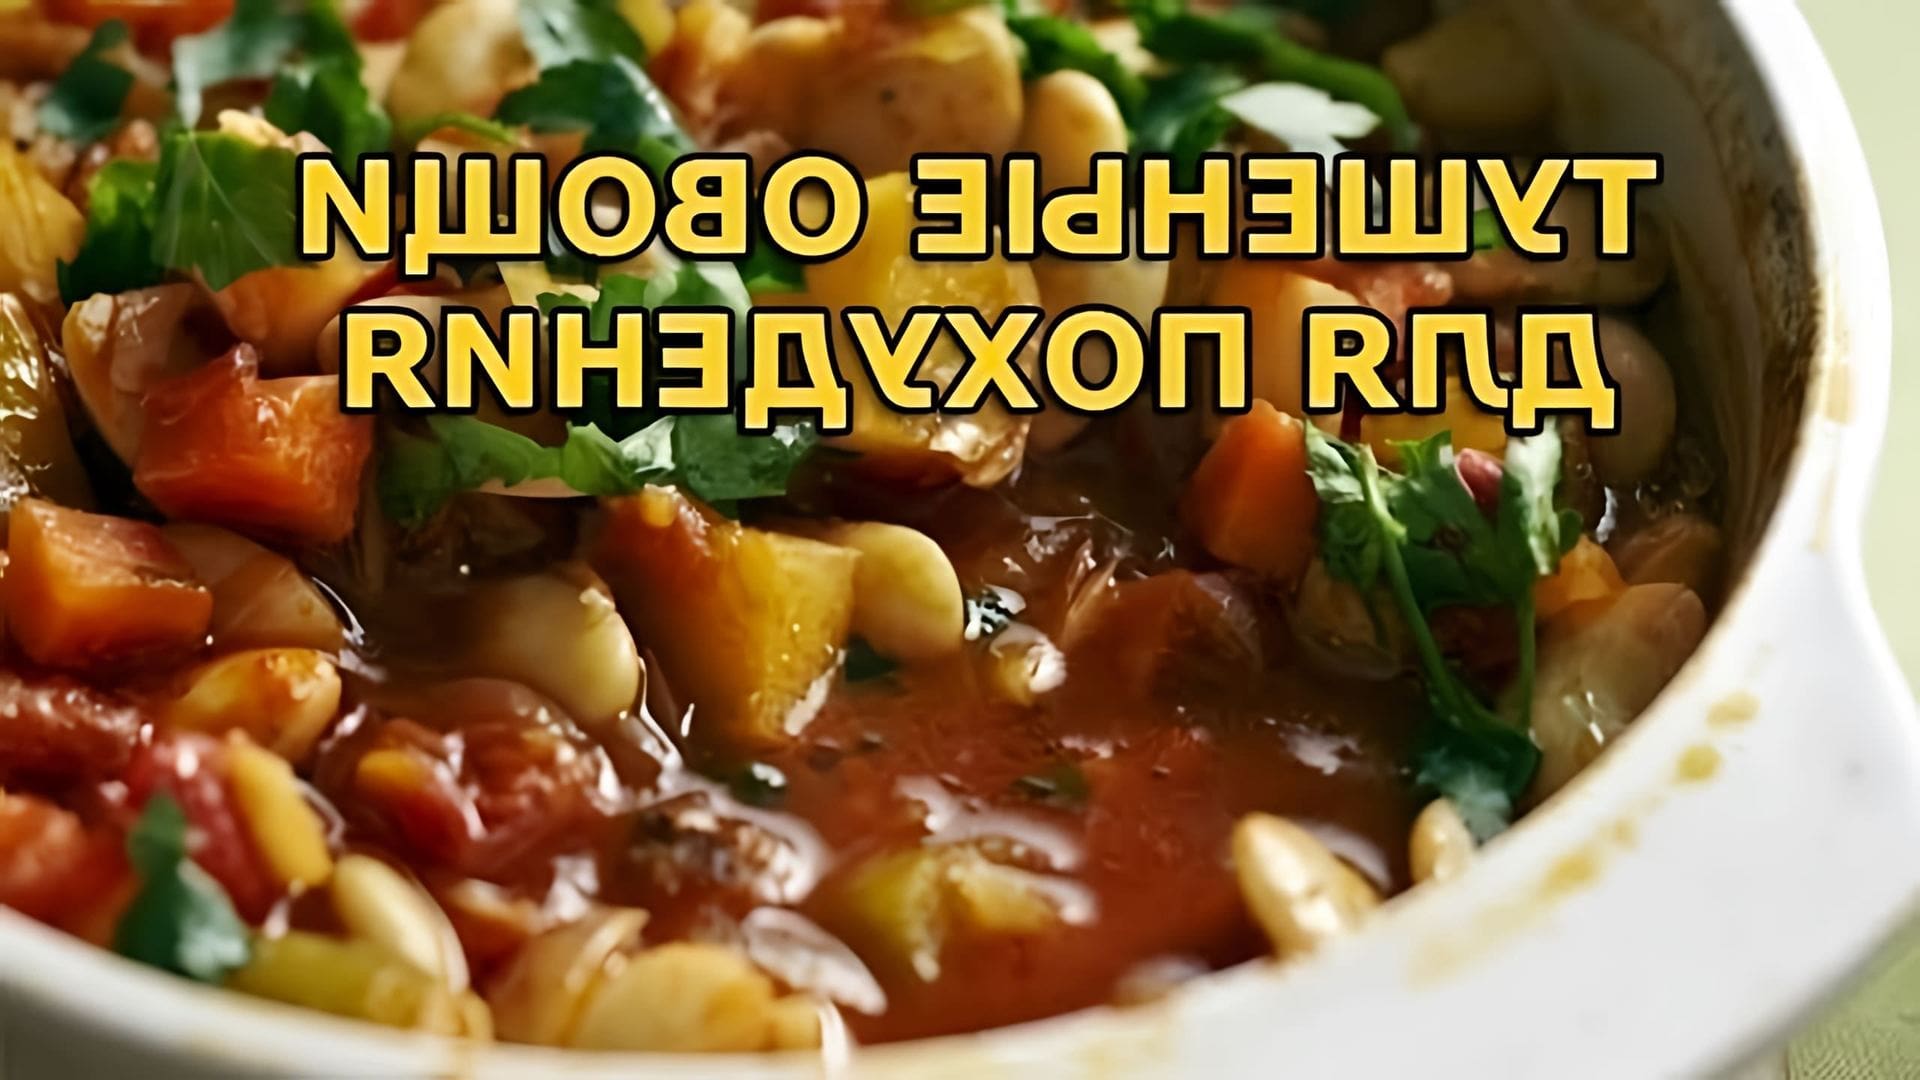 В этом видео Бородач готовит тушеные овощи, которые являются полезным блюдом для тех, кто хочет похудеть или запастись натуральными витаминами